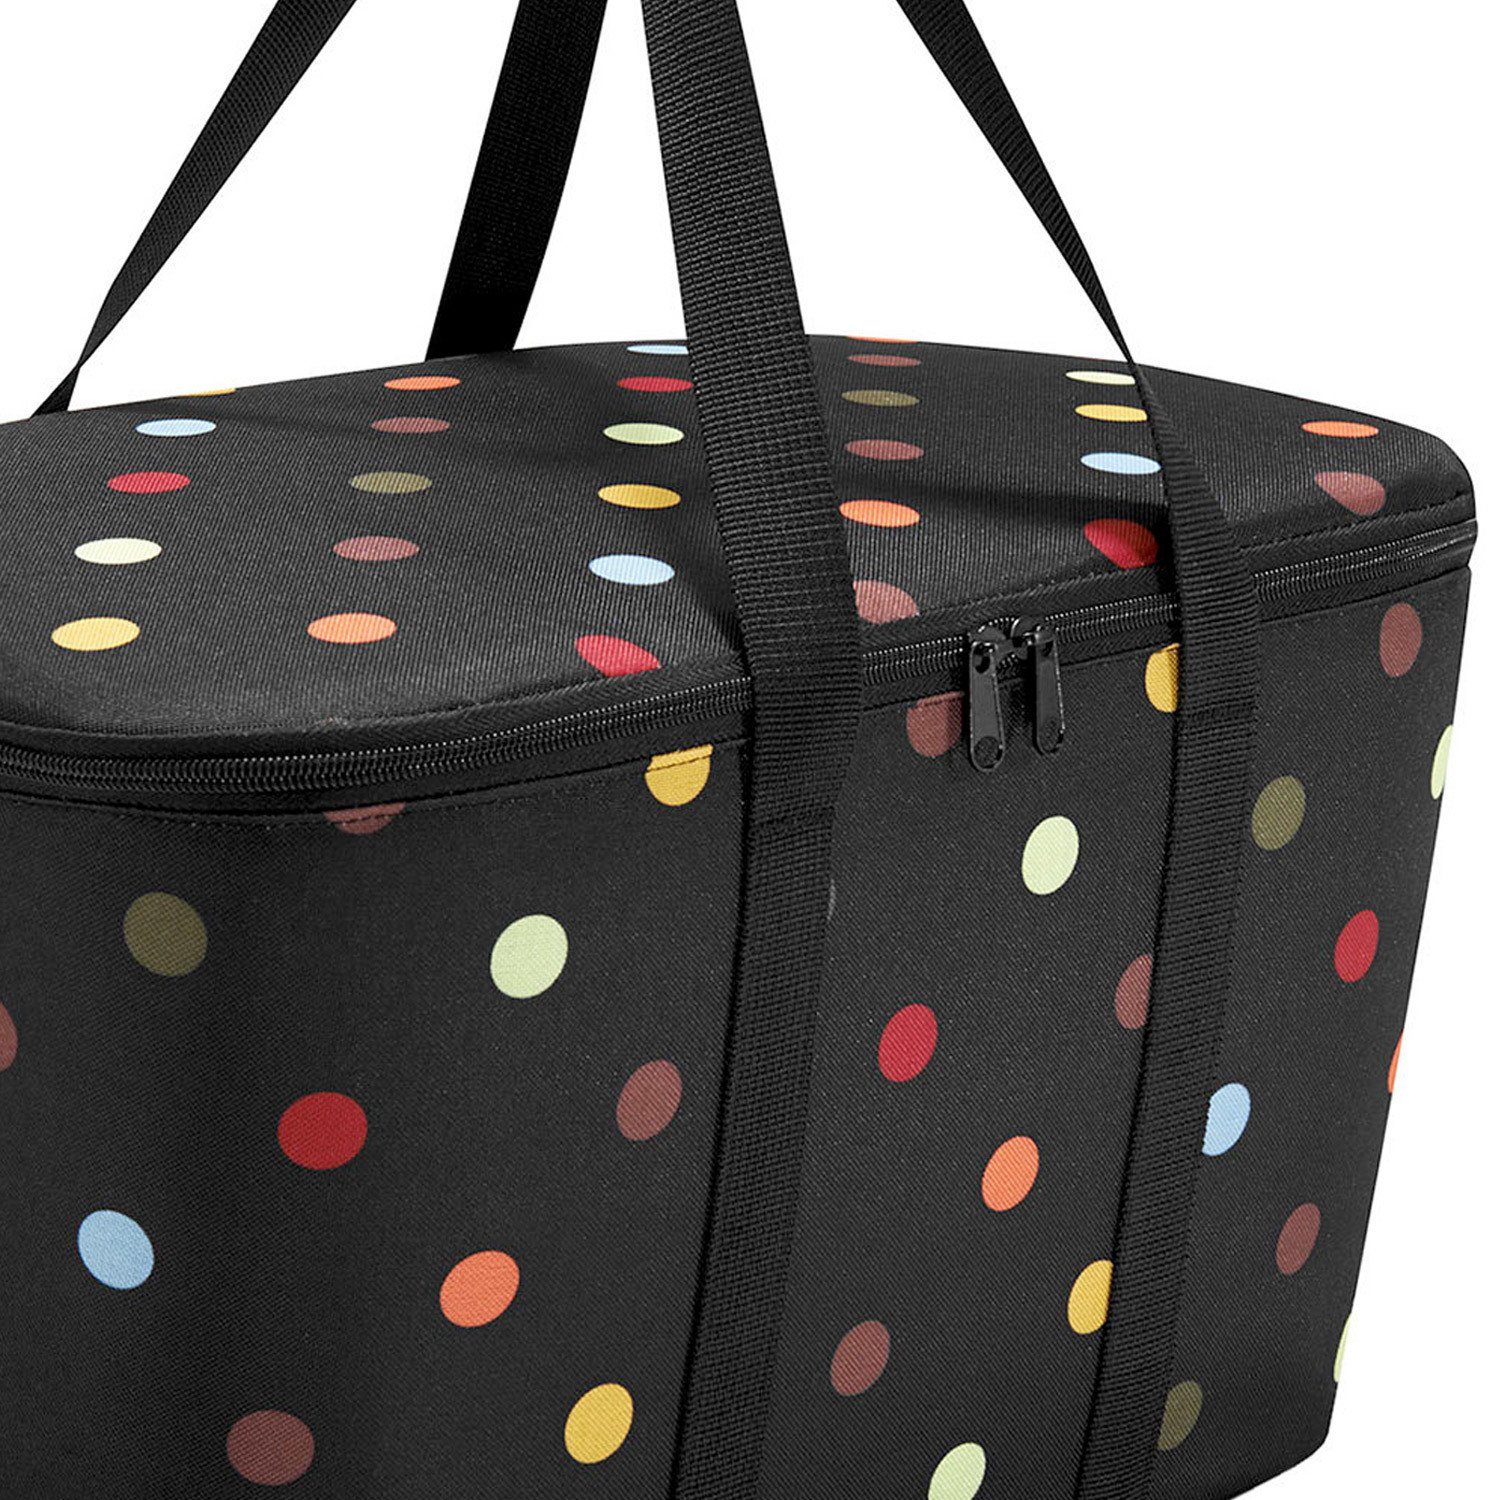 REISENTHEL® Picknickkorb coolerbag dots Thermo Kühltasche Wahl mixed zur Einkaufskorb 20 - Dekor black l Farbe